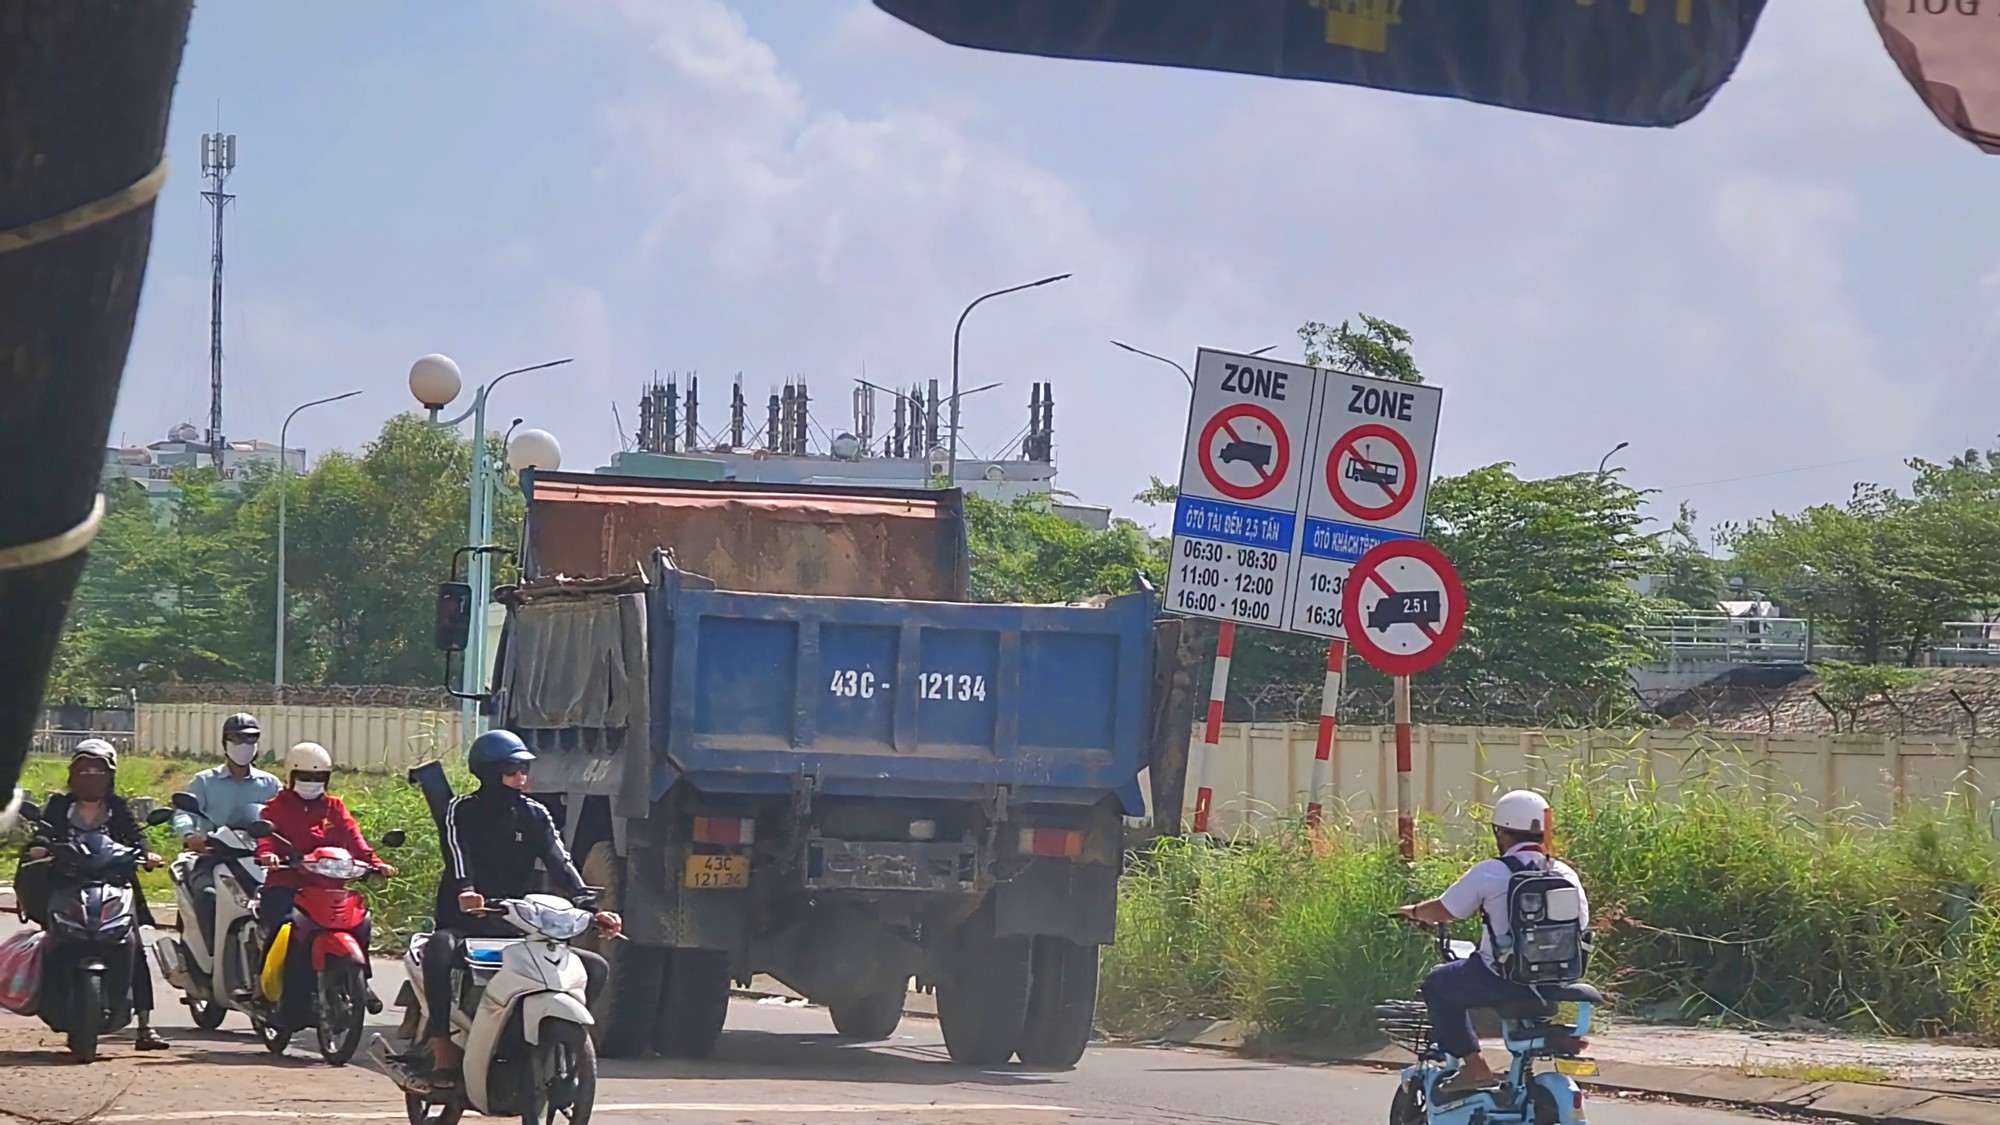 Phớt lờ biển báo, xe tải ồ ạt chạy vào đường cấm ở Đà Nẵng - Ảnh 2.